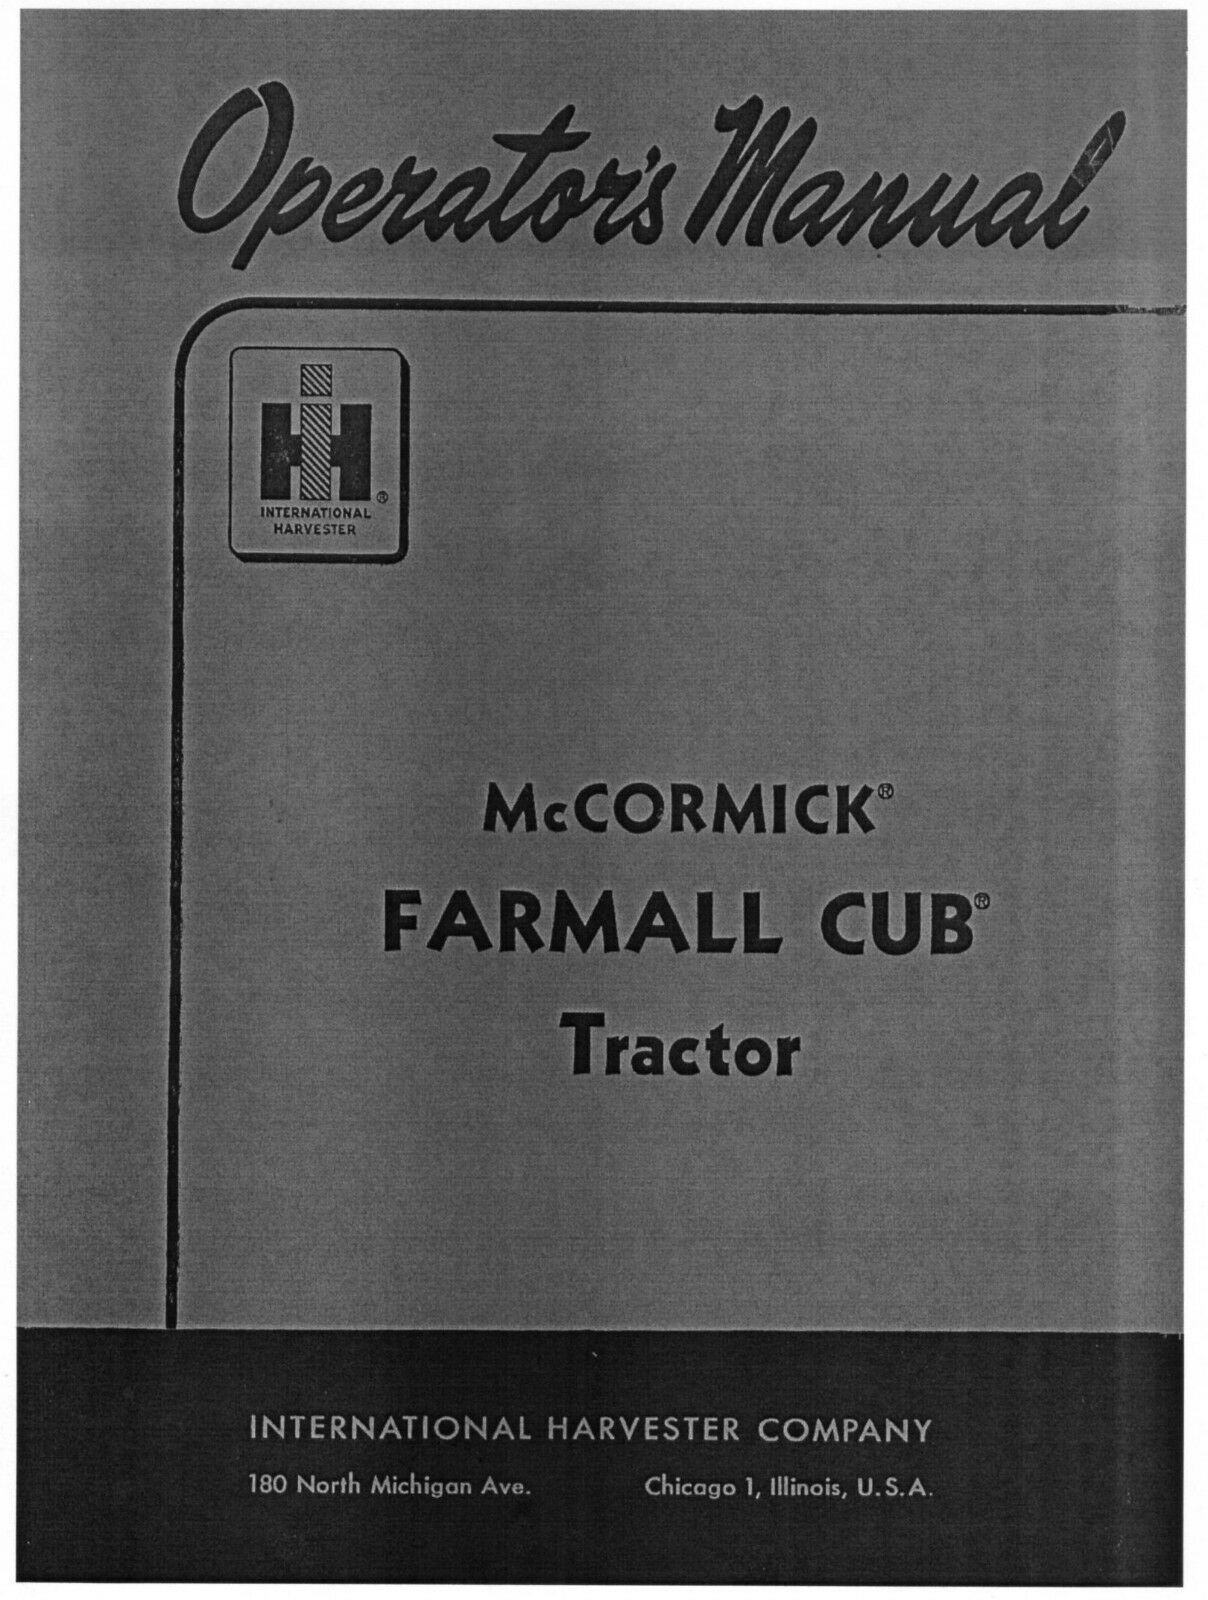 Mccormick farmall cub tractor parts